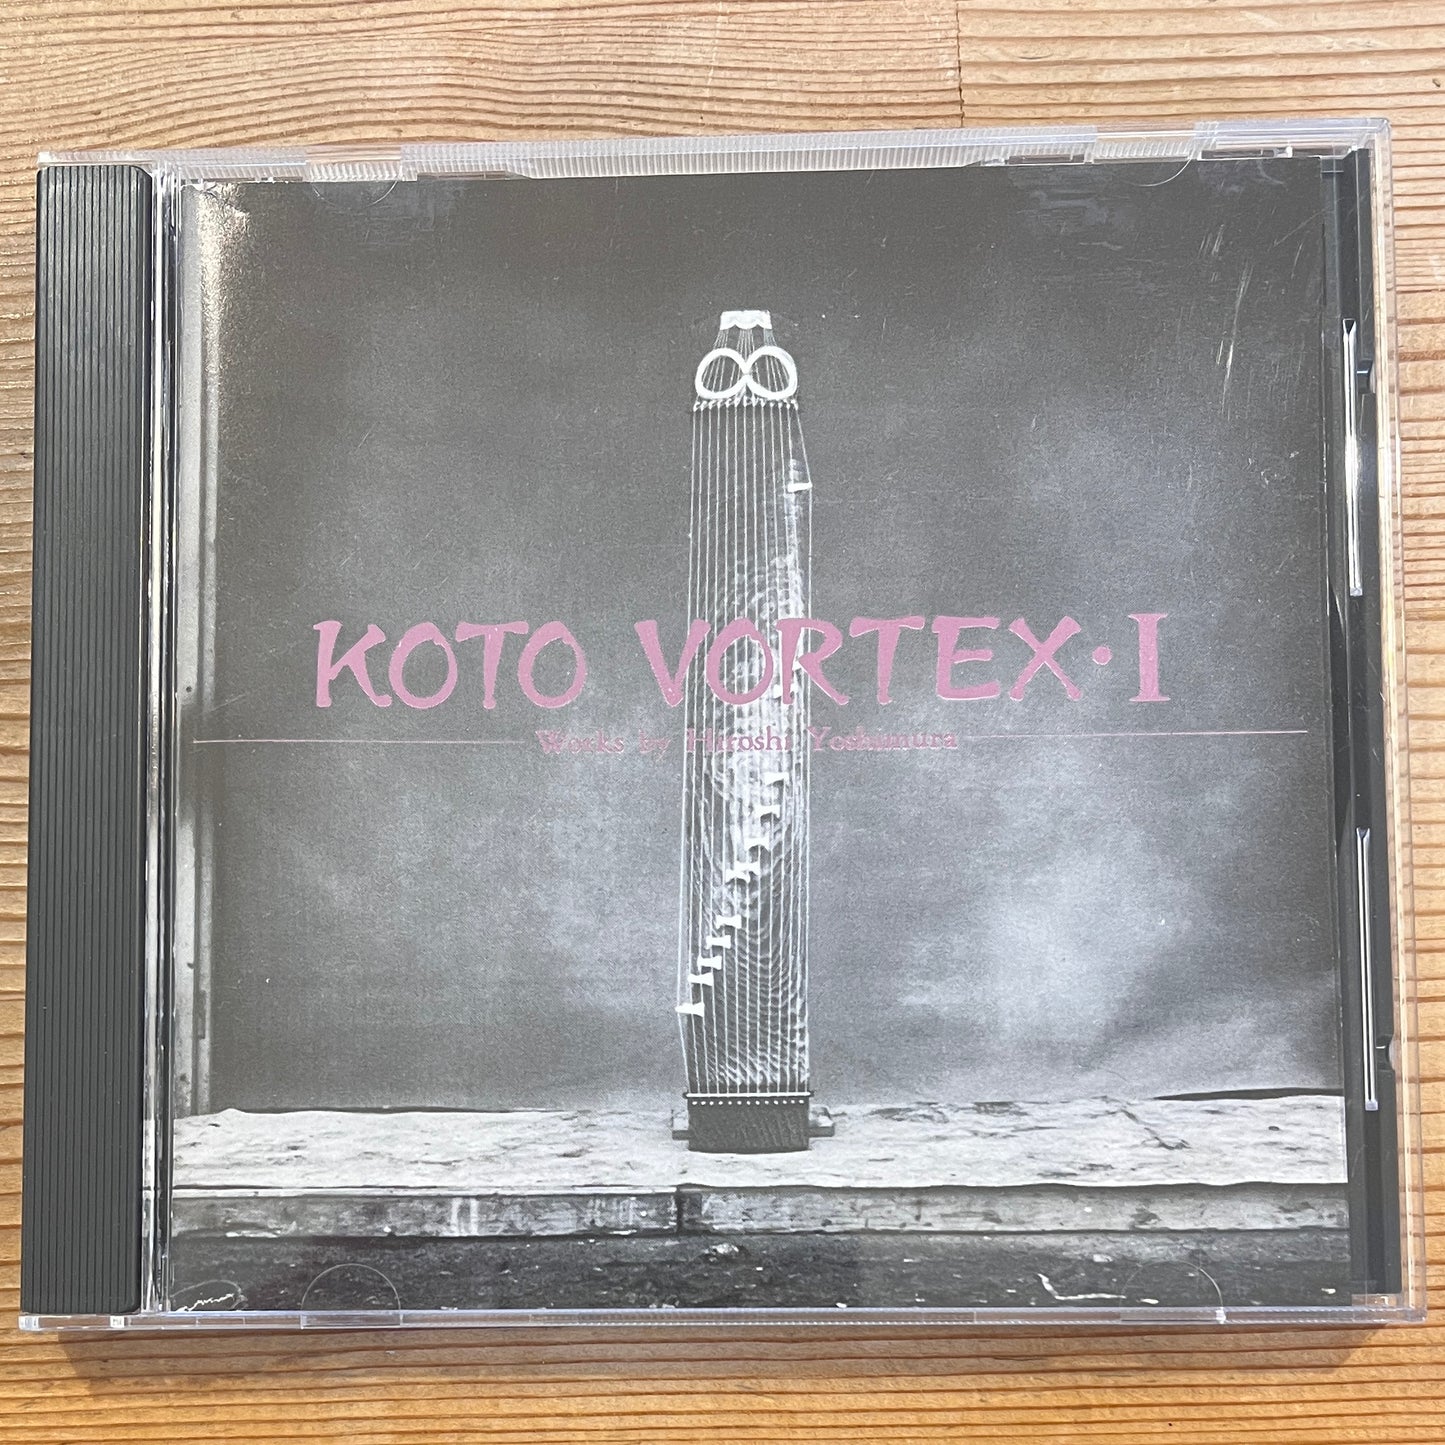 Koto Vortex – Koto Vortex・I